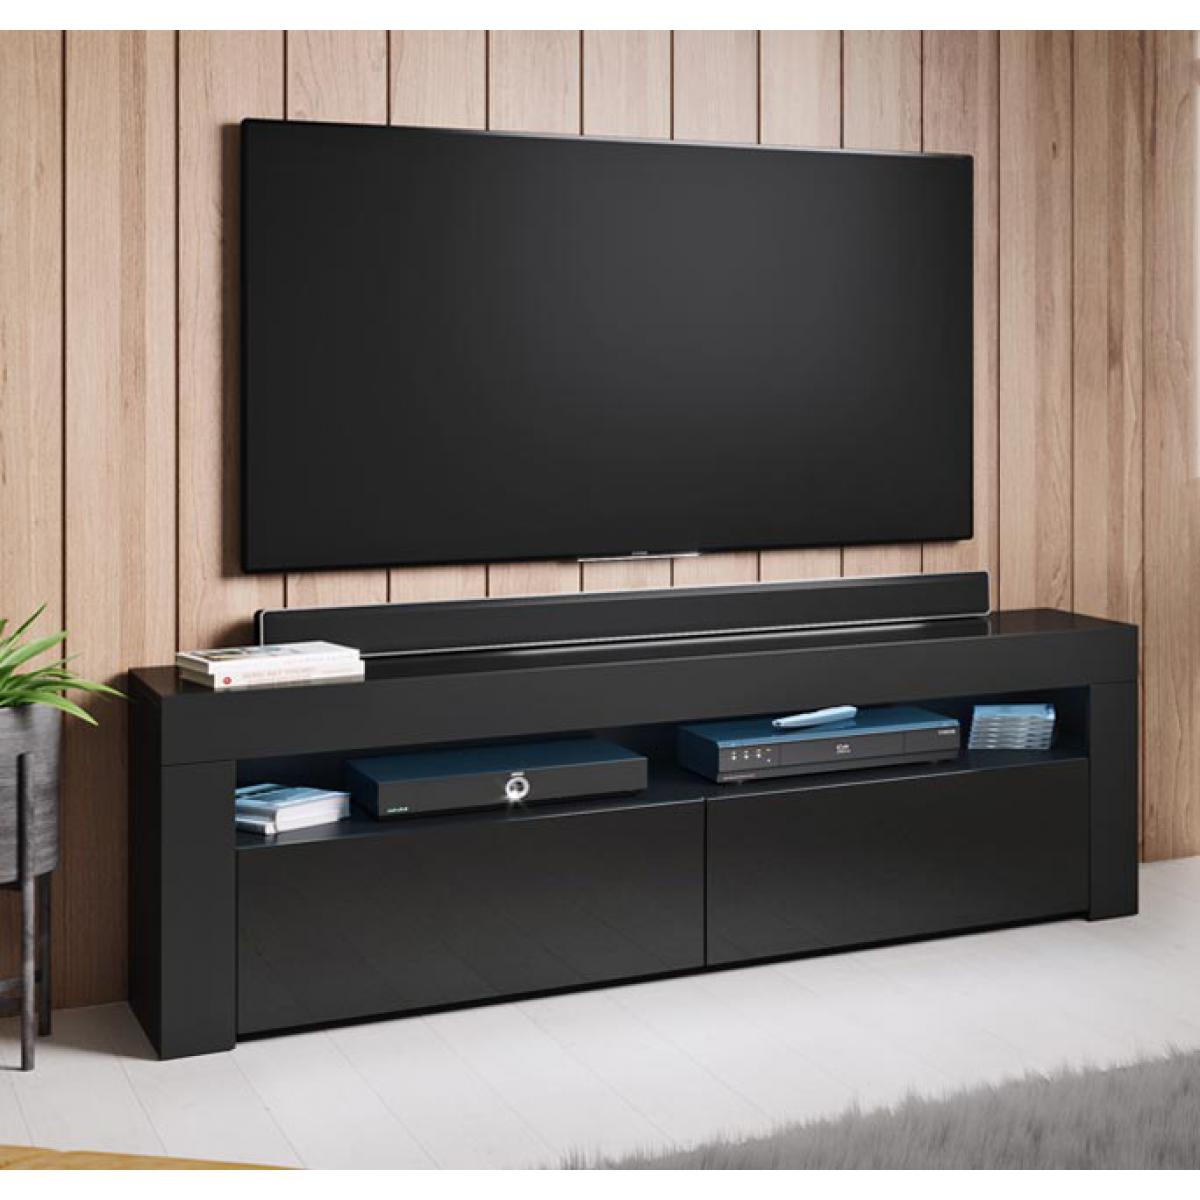 Design Ameublement - Meuble TV modèle Aker (140x50,5cm) couleur noir - Meubles TV, Hi-Fi